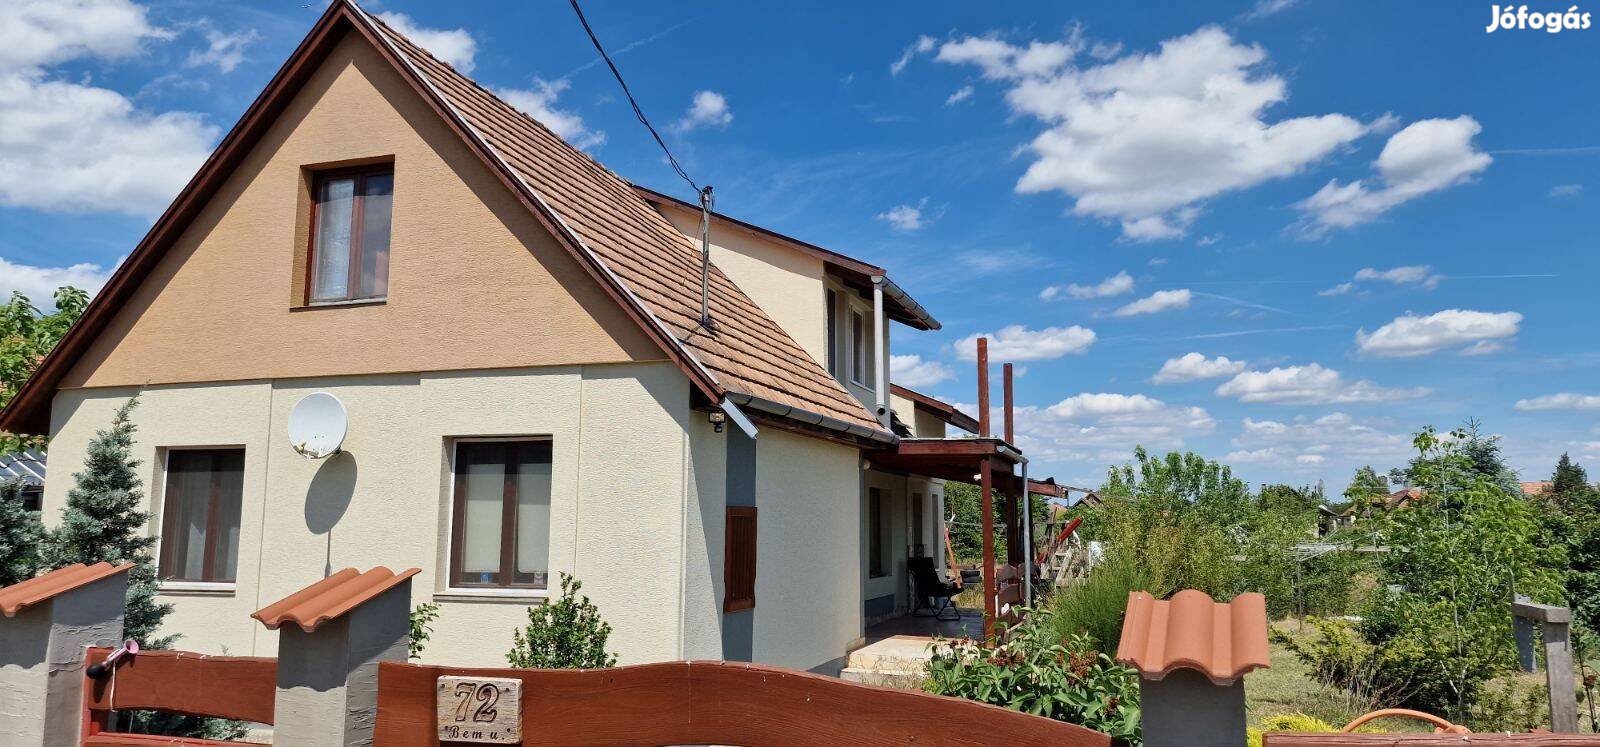 Pest megyében Vasadon kétgenerációs családi ház eladó